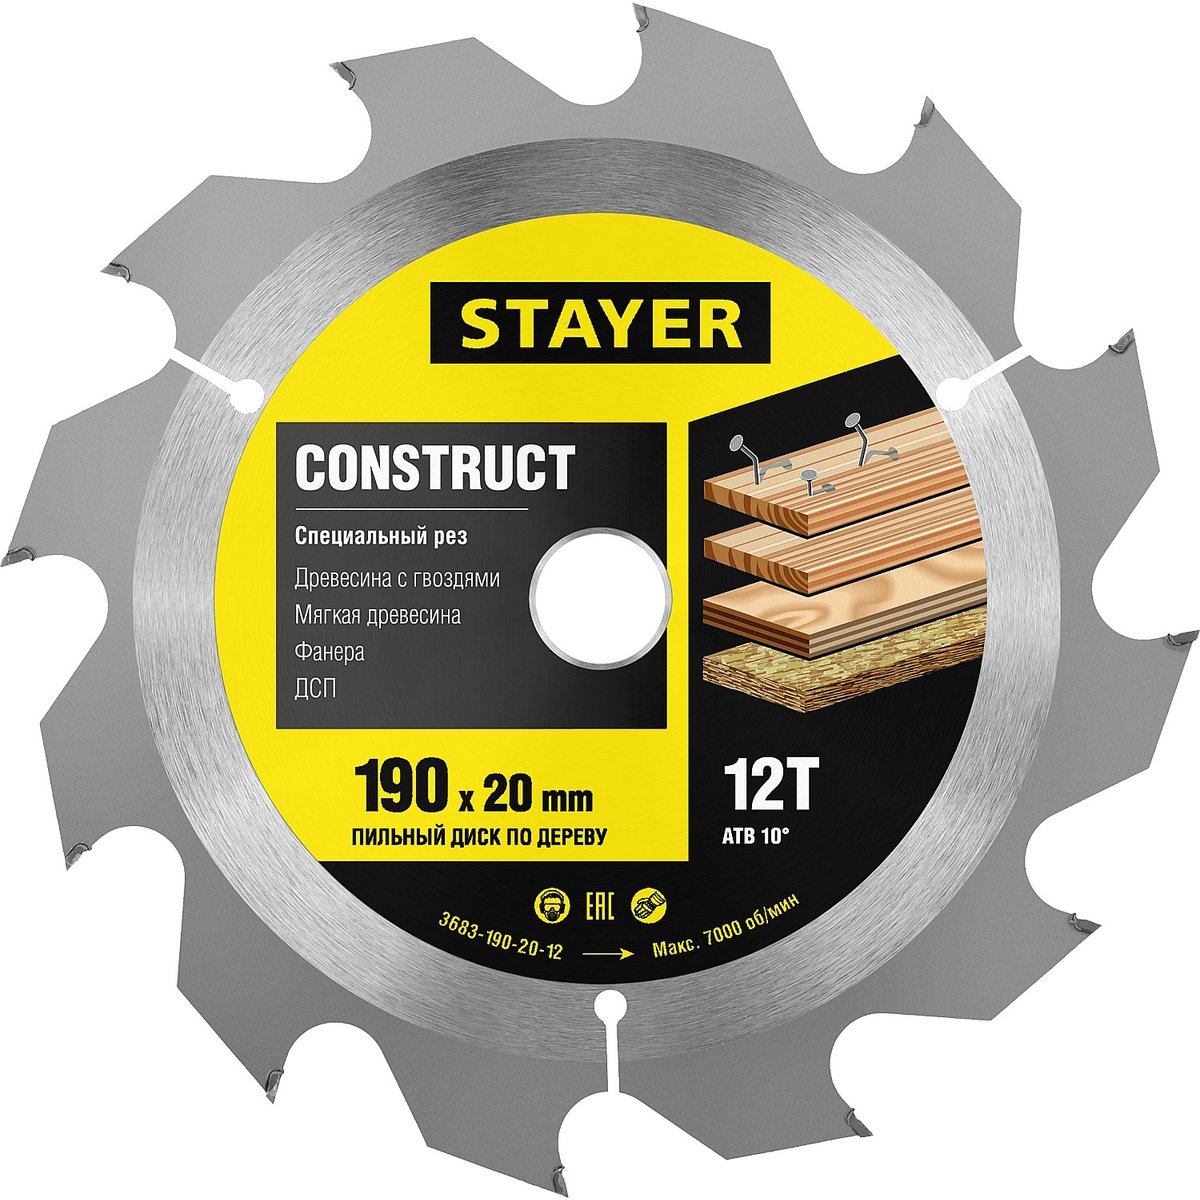 STAYER ⌀ 190 x 20 мм, 12T, пильный диск по дереву с гвоздями 3683-190-20-12